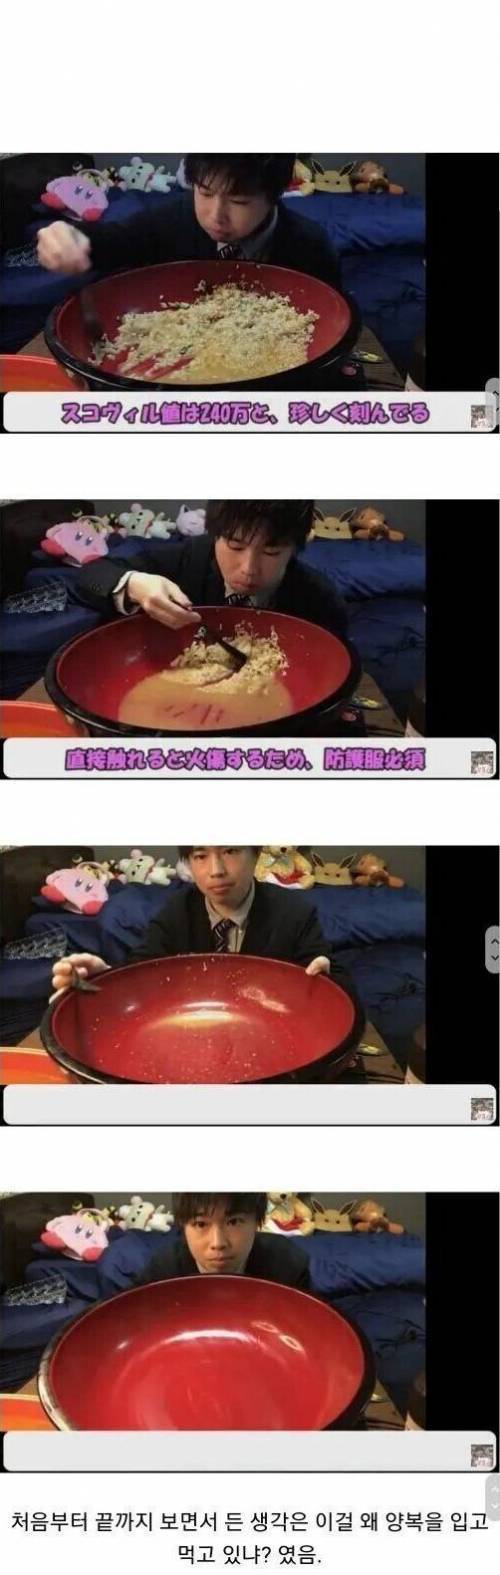 [스압] 일본인의 신라면 먹방.jpg